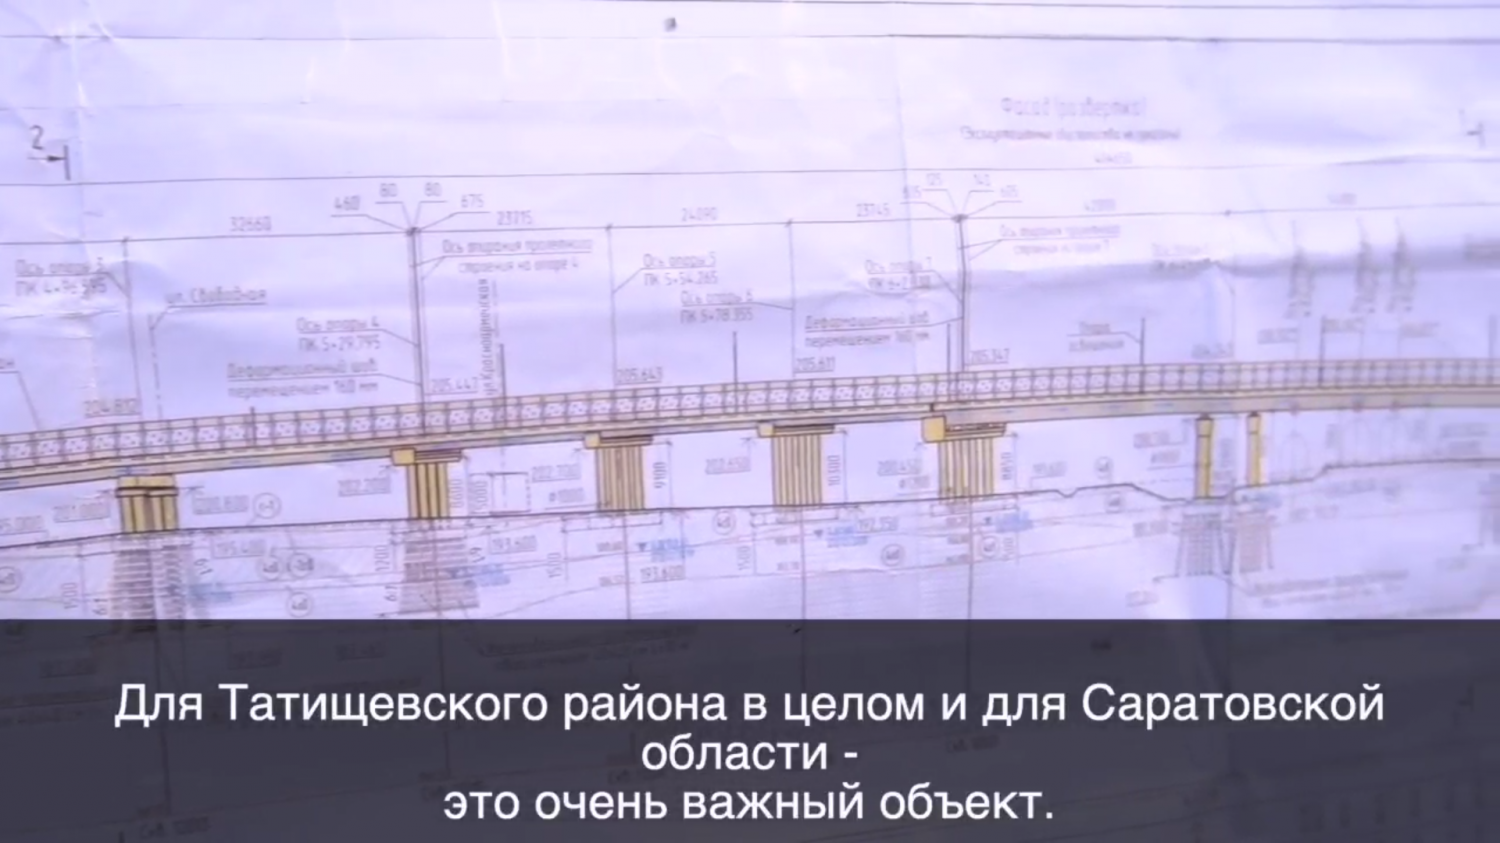 Путепровод в Татищевском районе – стратегически важный объект дорожной сети Саратовской агломерации